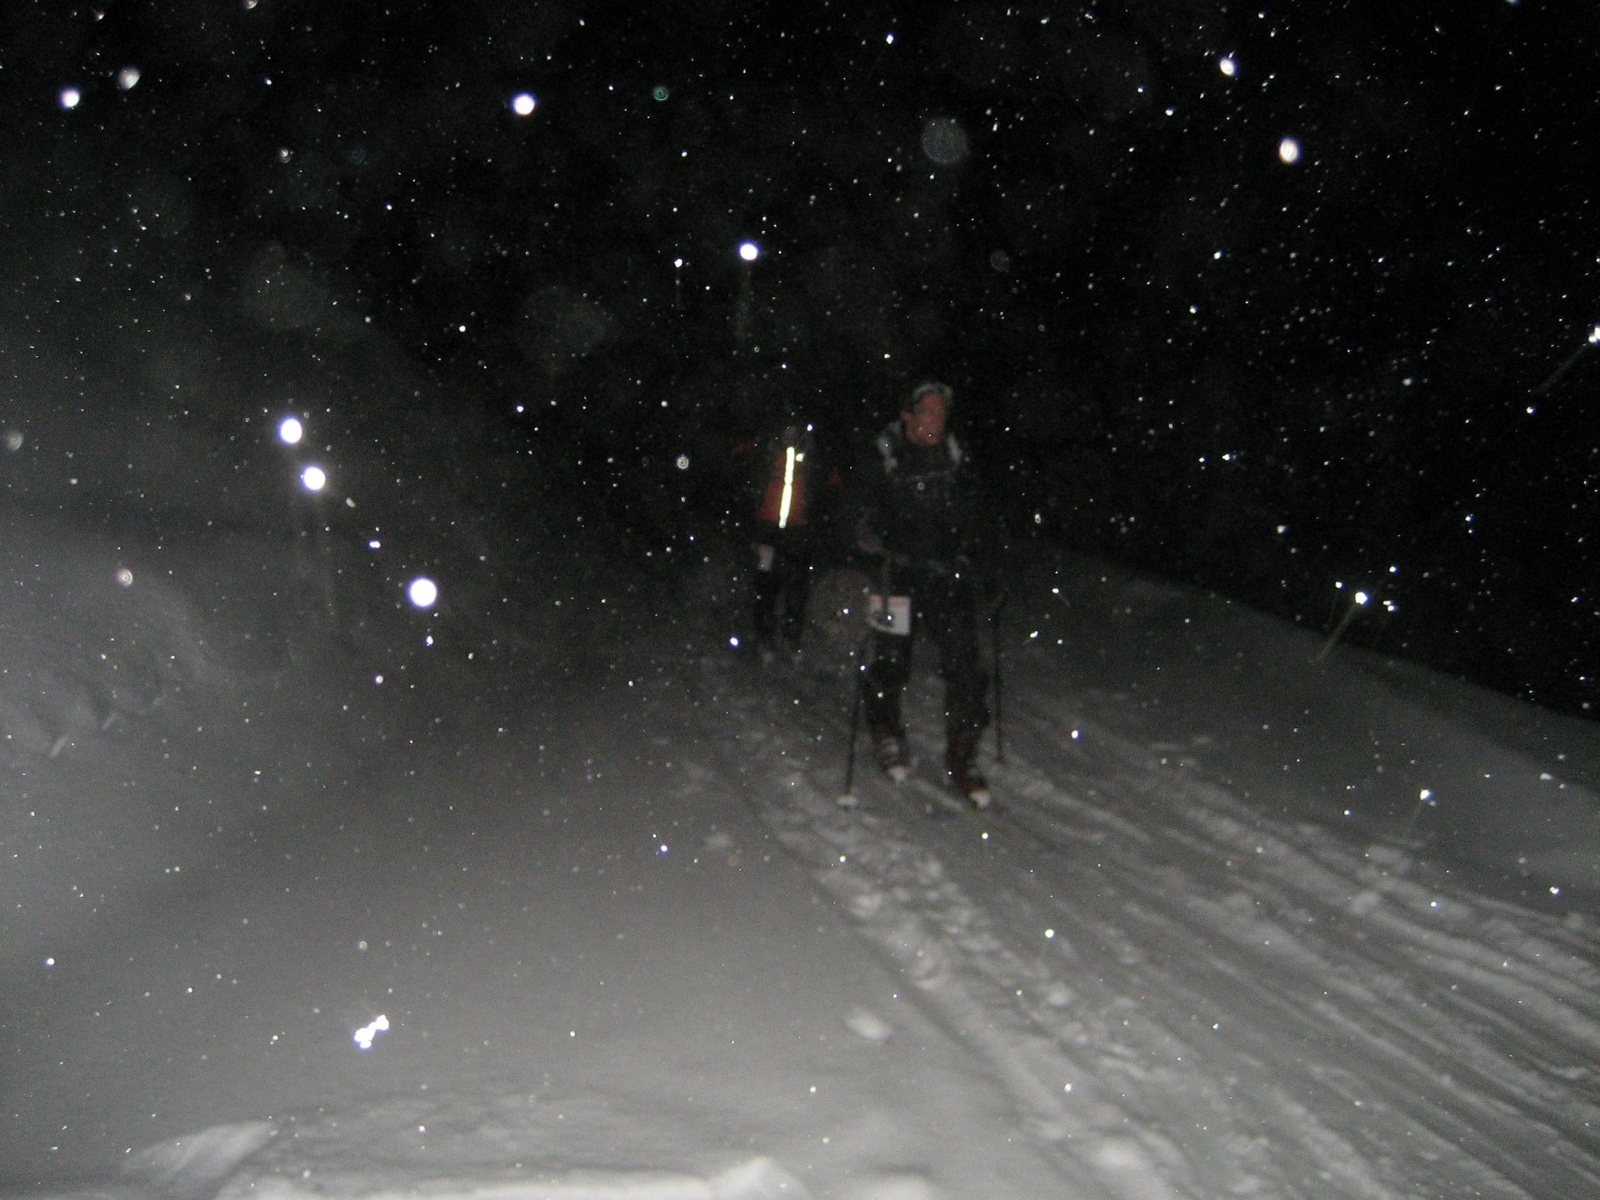 Des montées nocturnes mieux sécurisées pour les amateurs de randonnée à ski grâce au tournus instauré par cinq stations de la région.